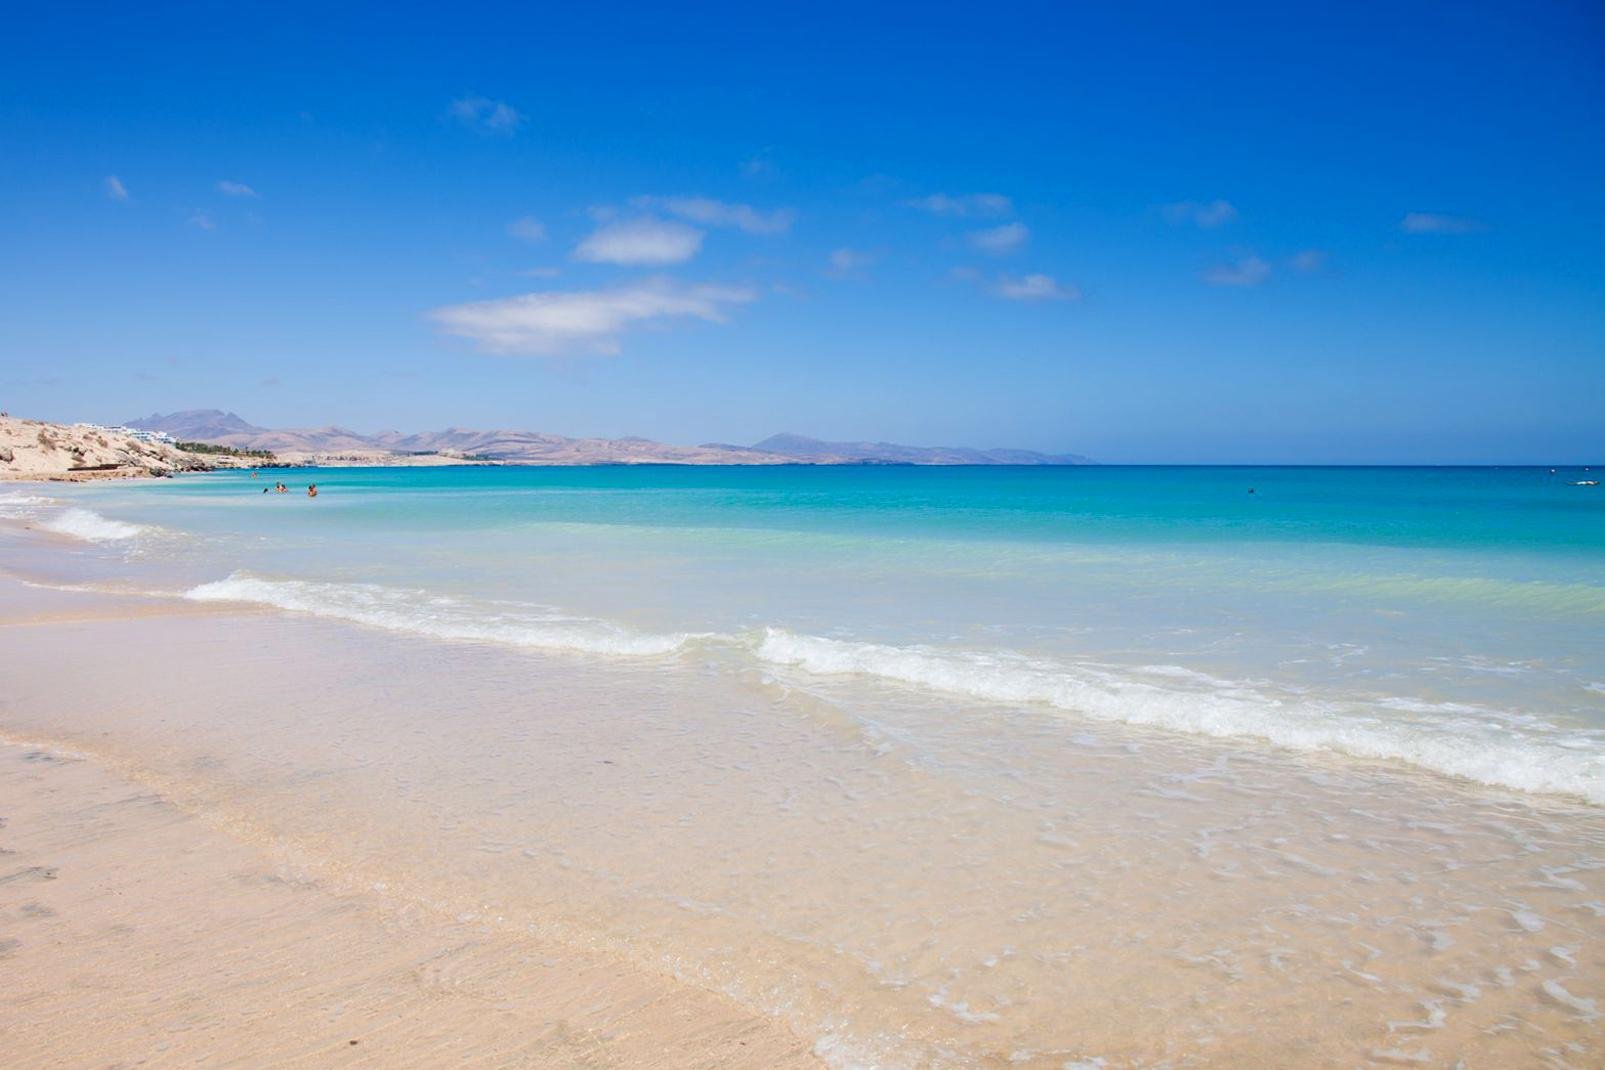 Les plages les plus agréables et impressionnantes de Fuerteventura se truvent sur la péninsule de Jandia, à l'extrême sud de l'île. Une côte plus sauvage se découvre en direction du phare isolé de Punta de Jandia, tout comme sur la partie ouest de la péninsule. Le symbole de la ville est un grand phare blanc qui domine l'océan. Jandia est réputée comme étant l'un des meilleurs spots mondial de planche ...